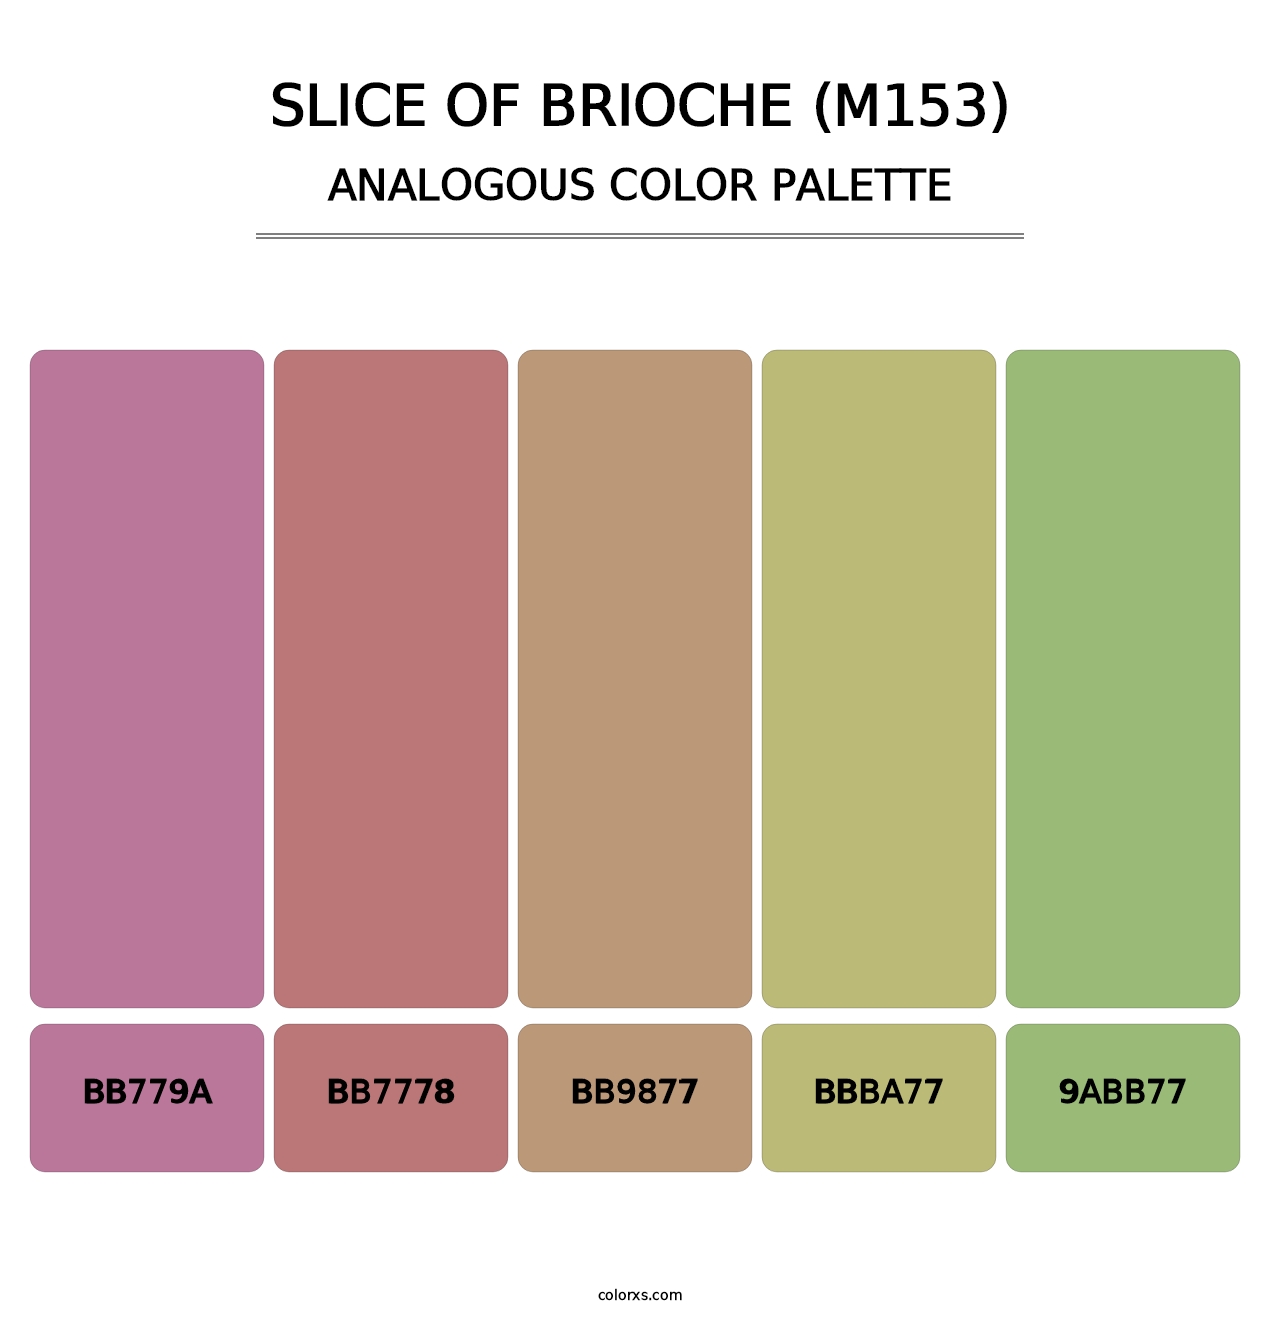 Slice of Brioche (M153) - Analogous Color Palette